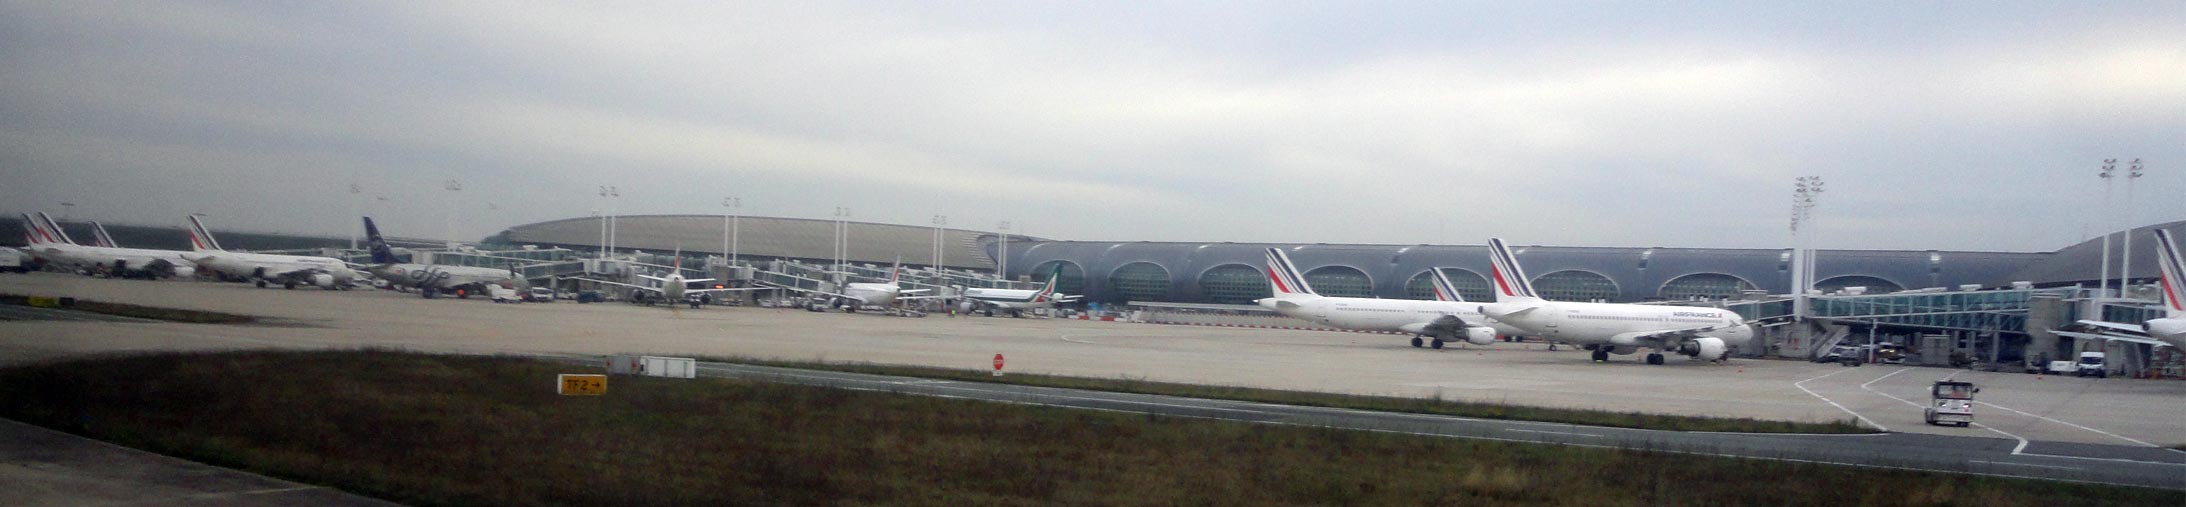 Аэропорт Шарль-де-Голль, Париж, фото терминала